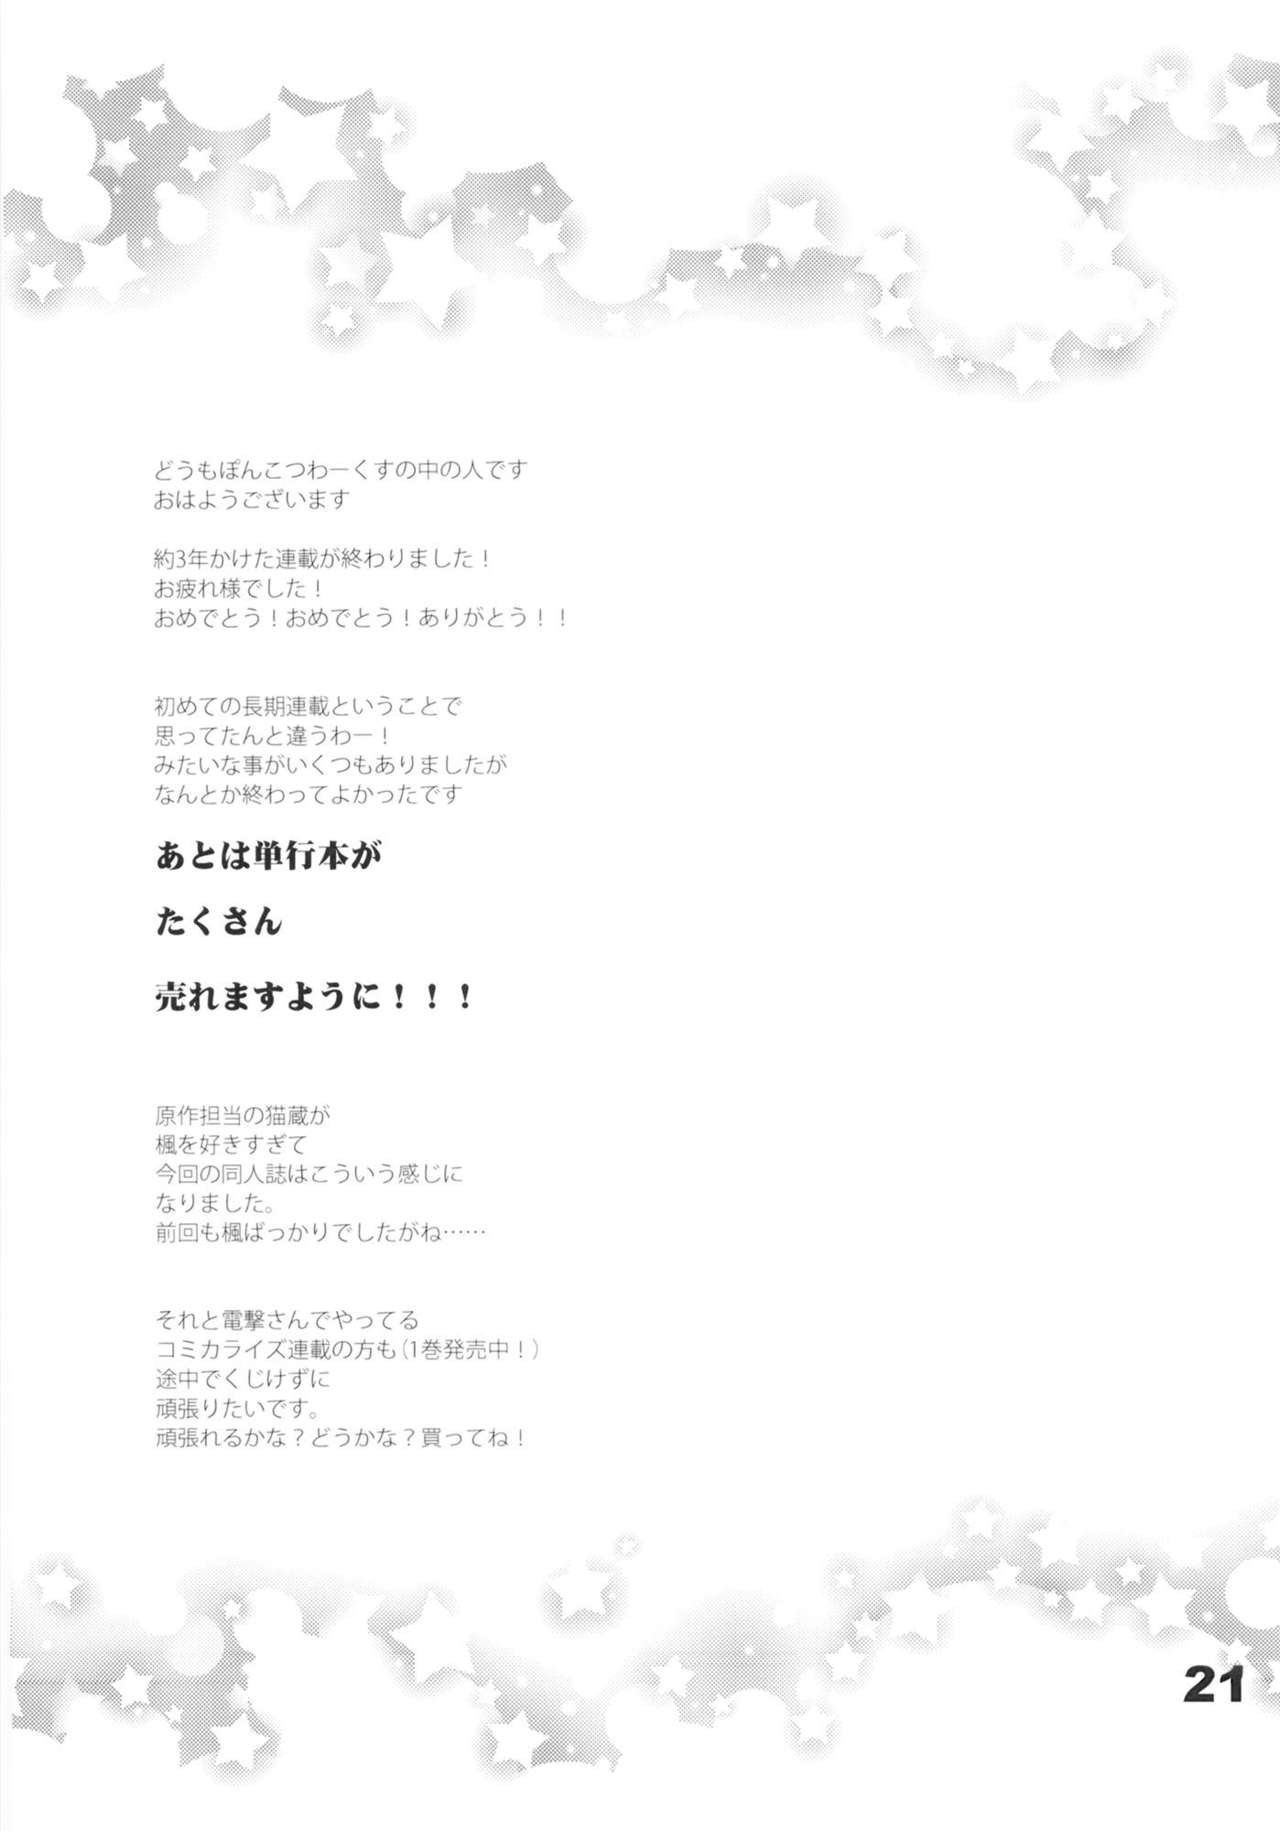 [Ponkotsu Works (Ponkotsu Works)] Kyuukyoku Reijou Nishizono Shizuka no Karei naru Daidanen [ぽんこつわーくす (ぽんこつわーくす)} 究極令嬢西園静香の華麗なる大団円